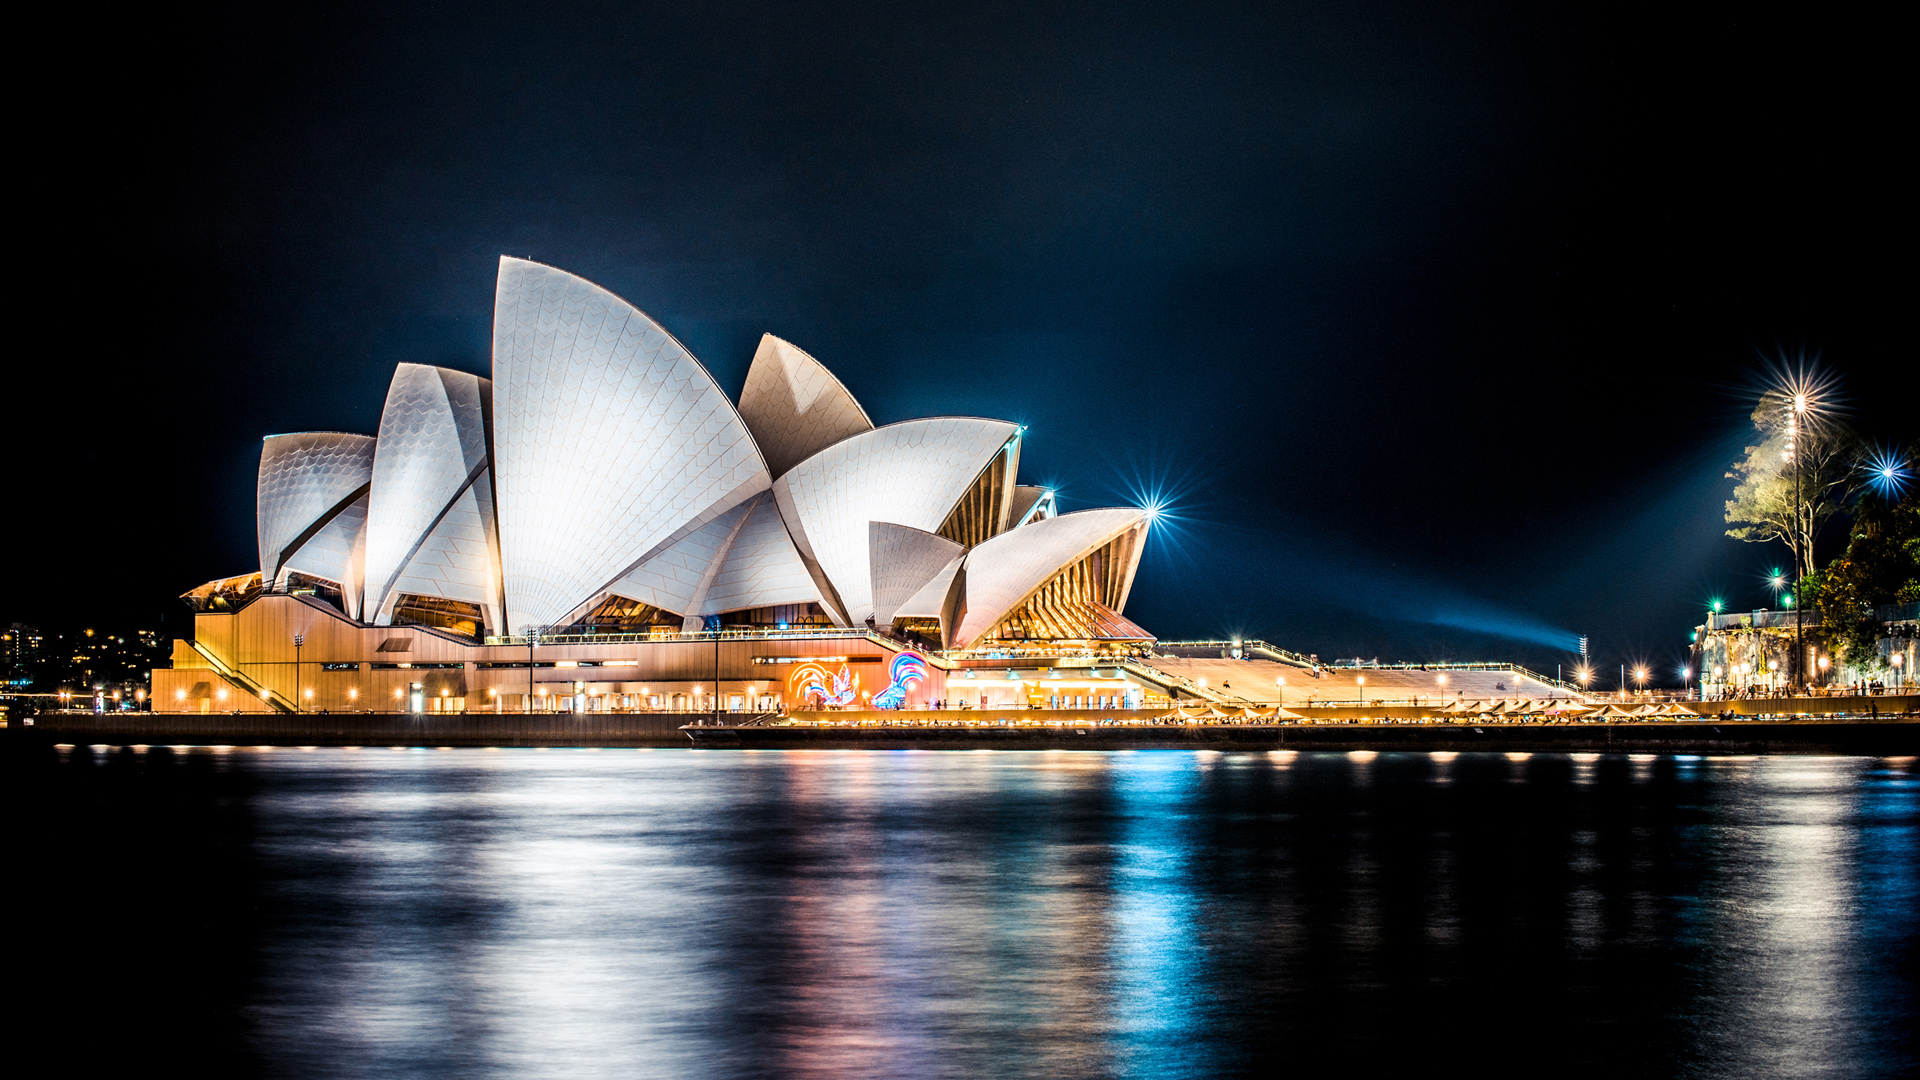 夜幕降临时的悉尼歌剧院夜景